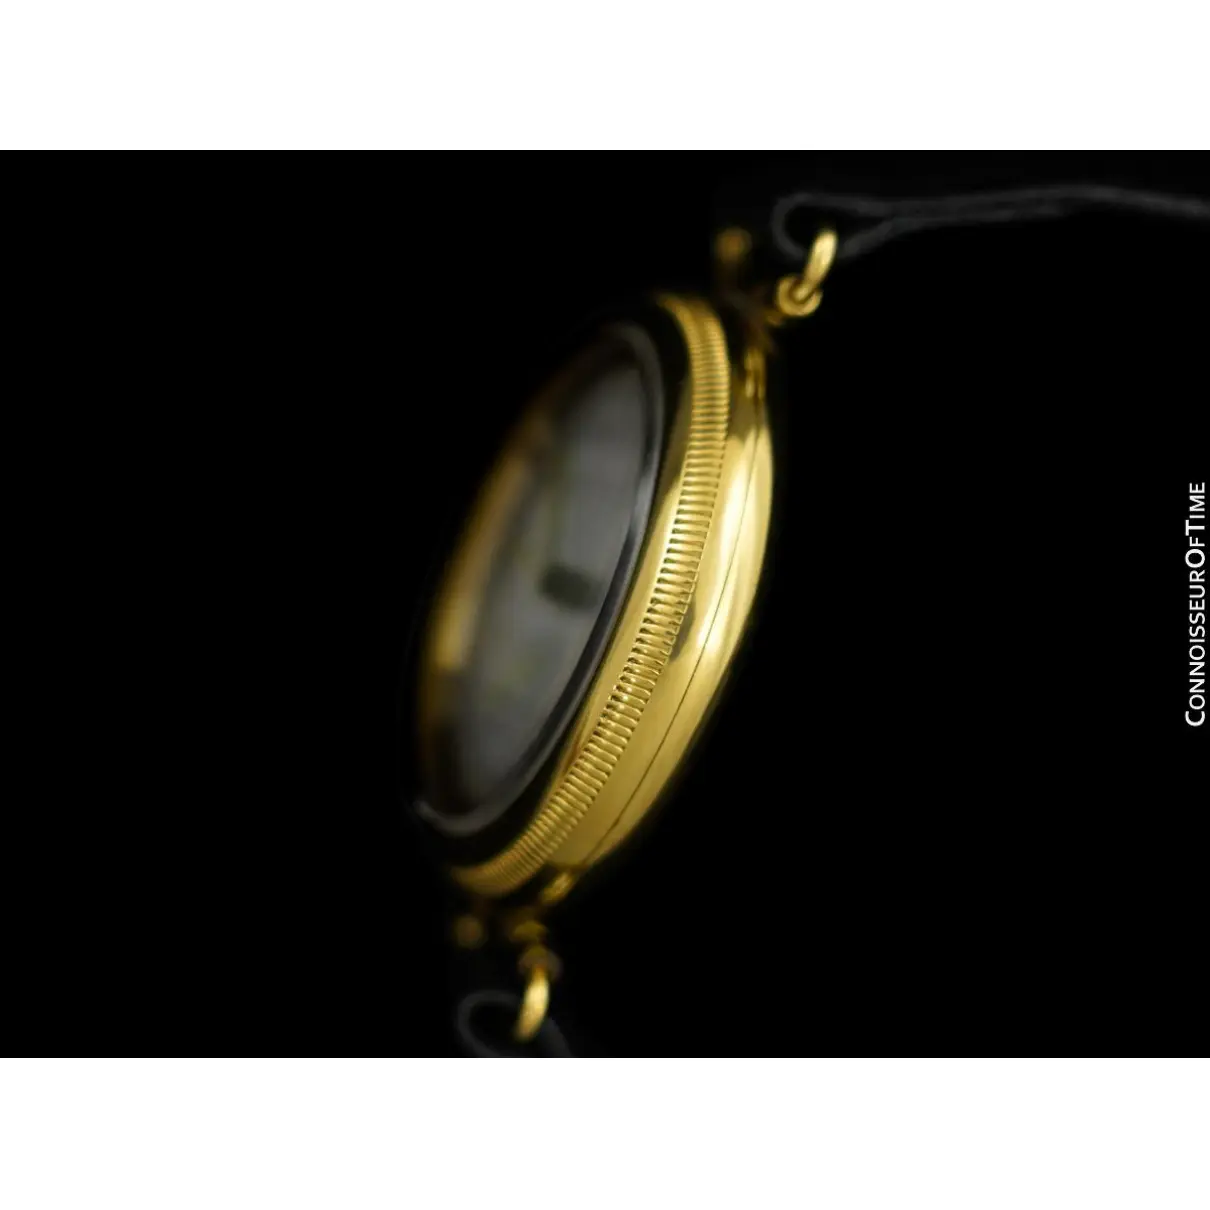 Yellow gold watch Rolex - Vintage